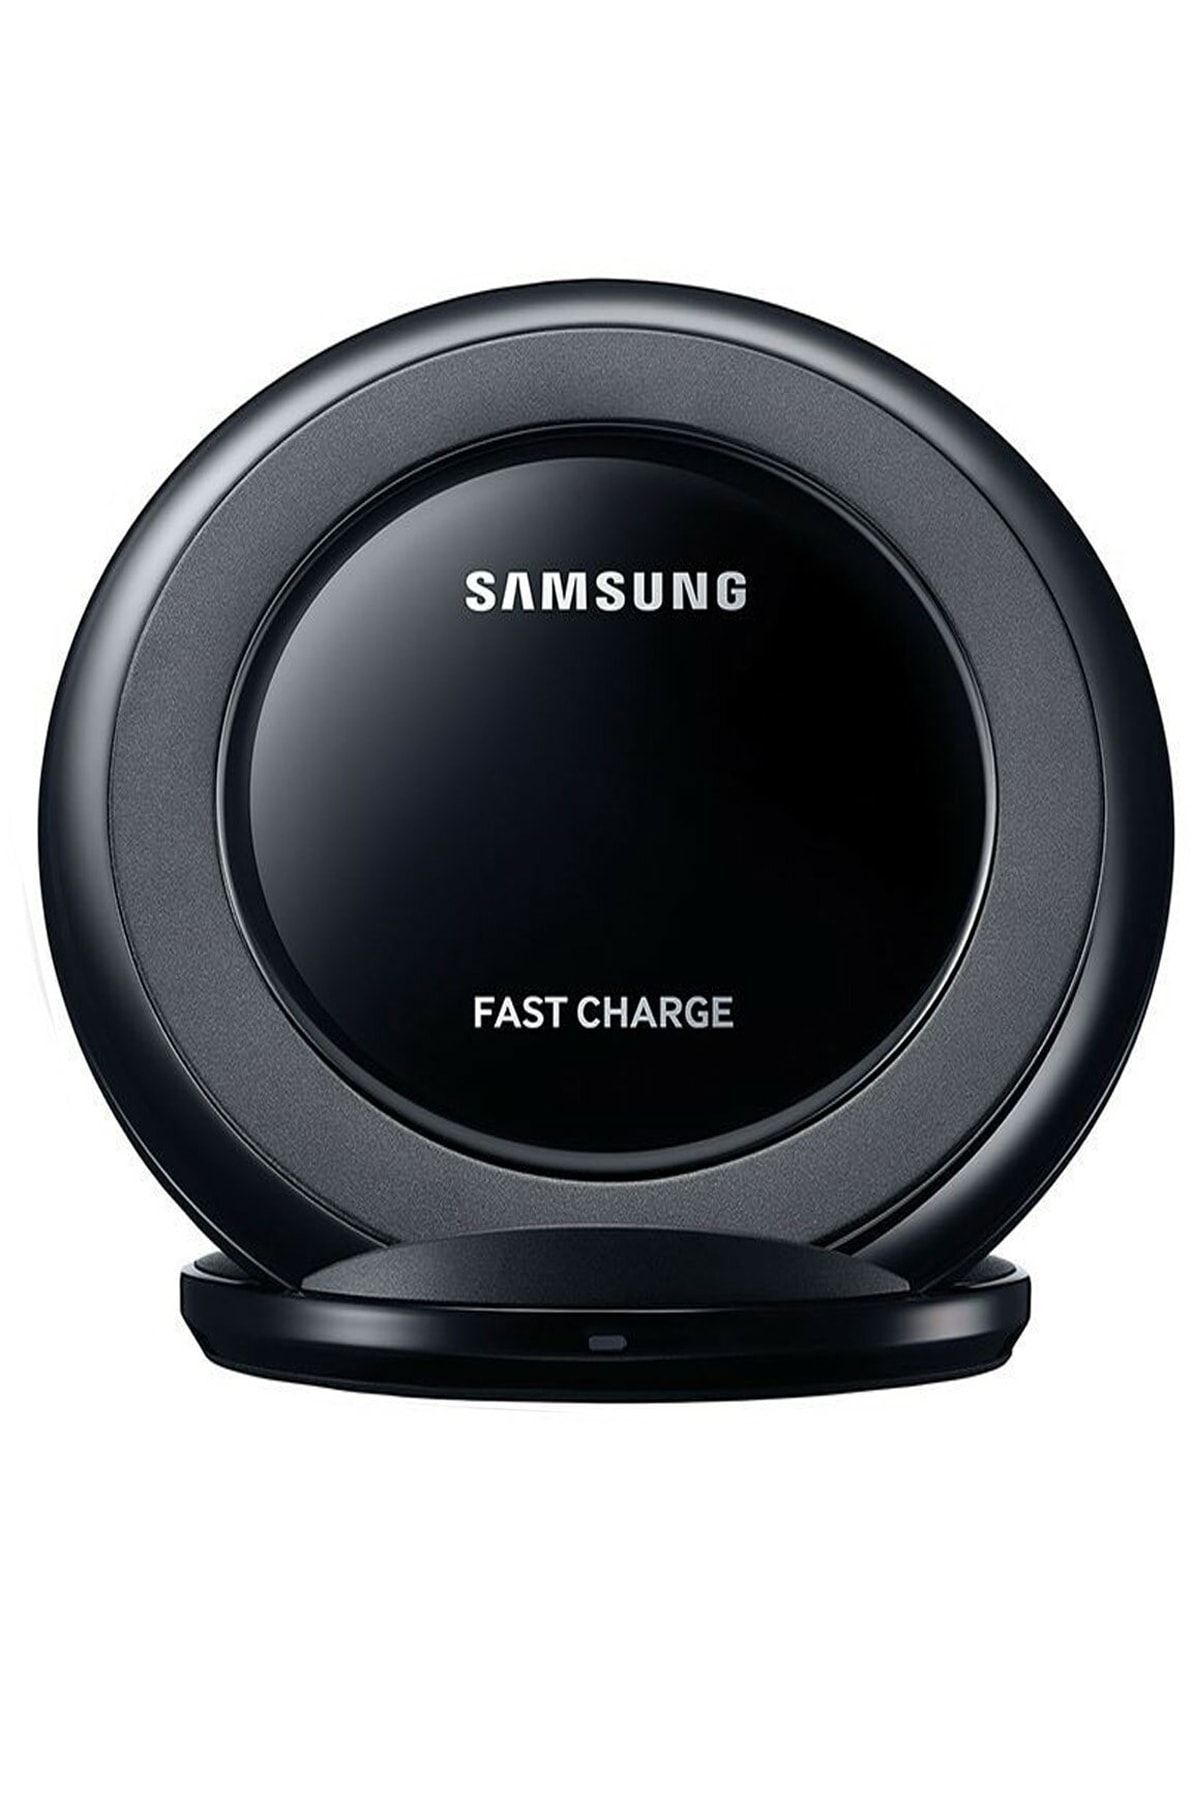 Ceykergsm Samsung Galaxy Kablosuz Hızlı Şarj Cihazı Standlı Note 5, S6, S7, S7 Edge, S8, S8+ S9, S9+ Ep-ng930